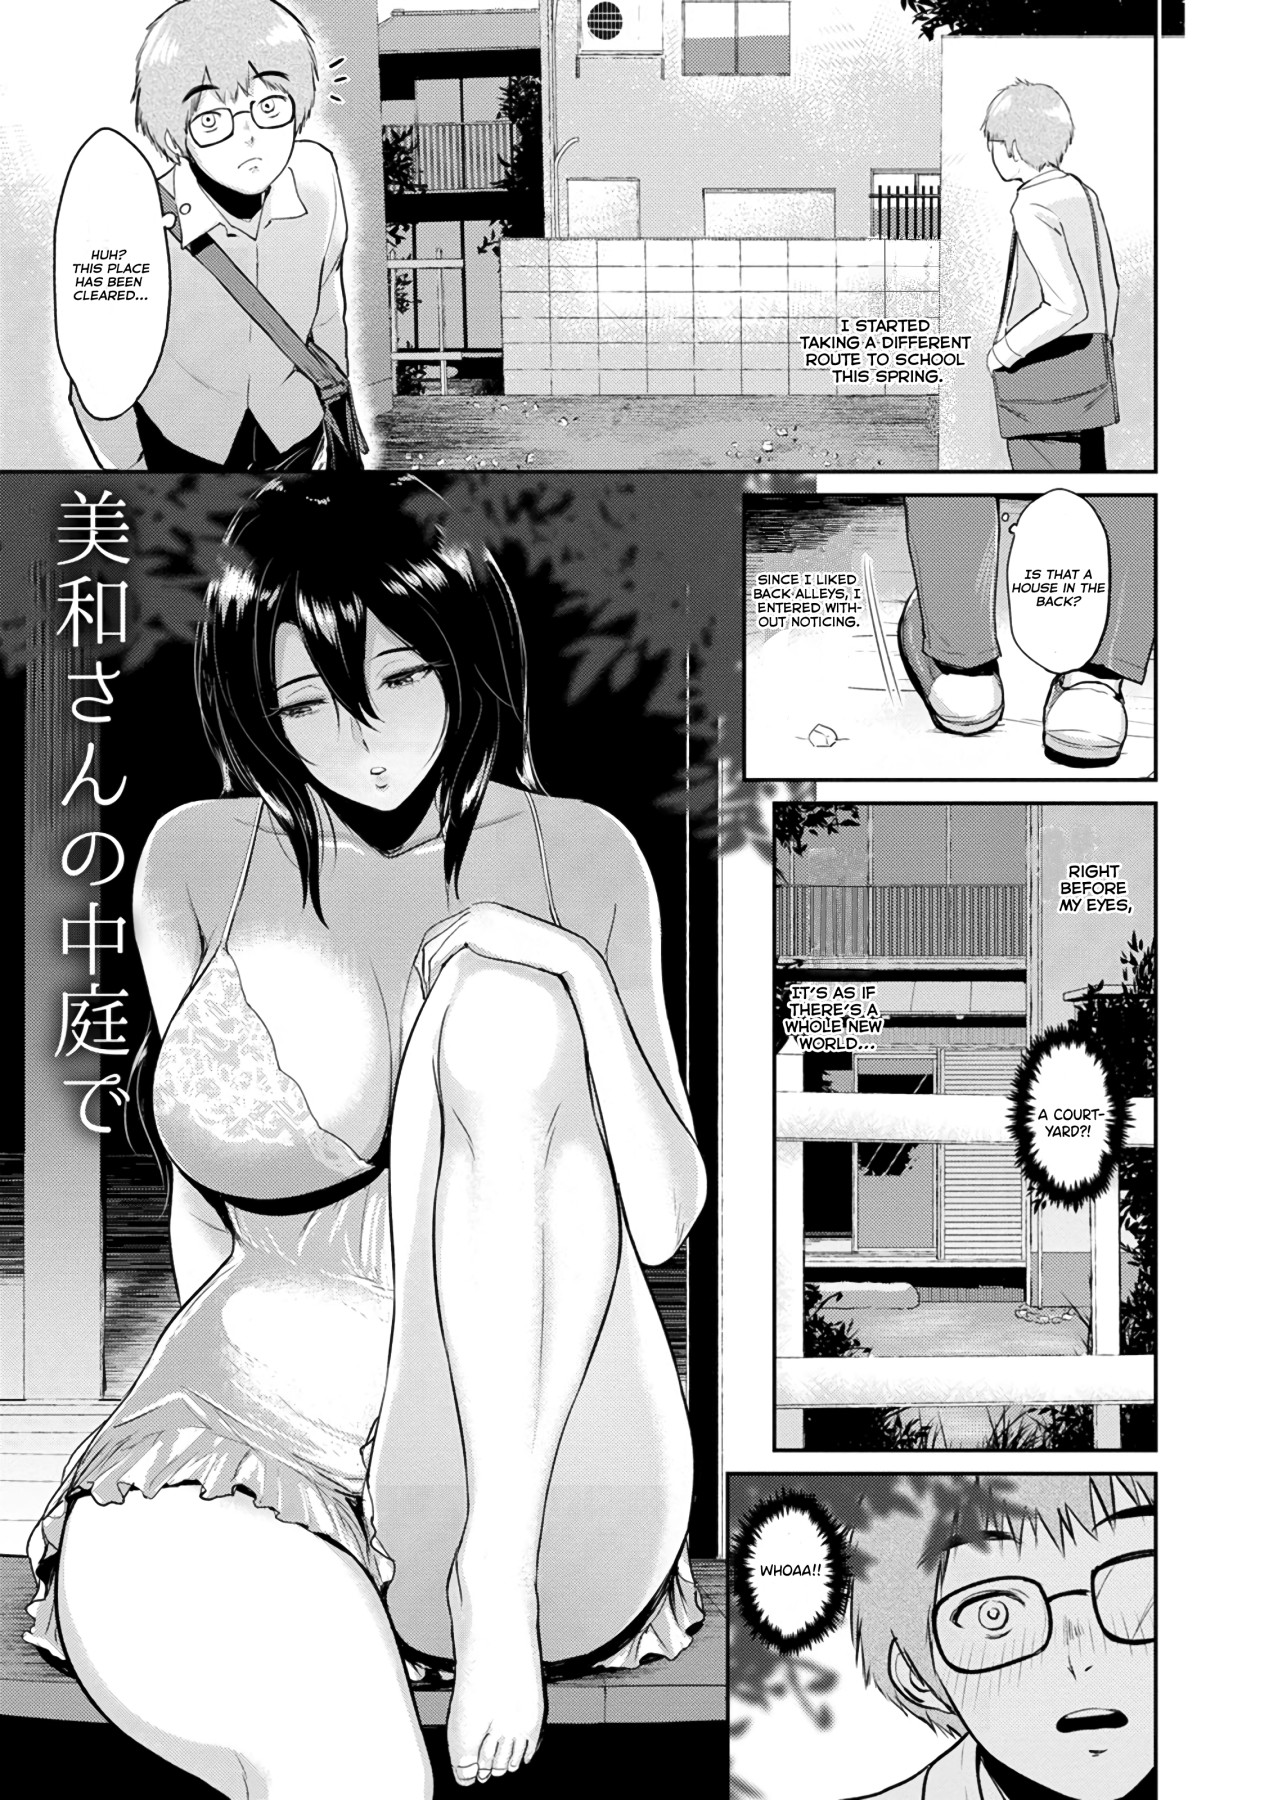 Hentai Manga Comic-In Ms. Miwa's Courtyard-Read-2